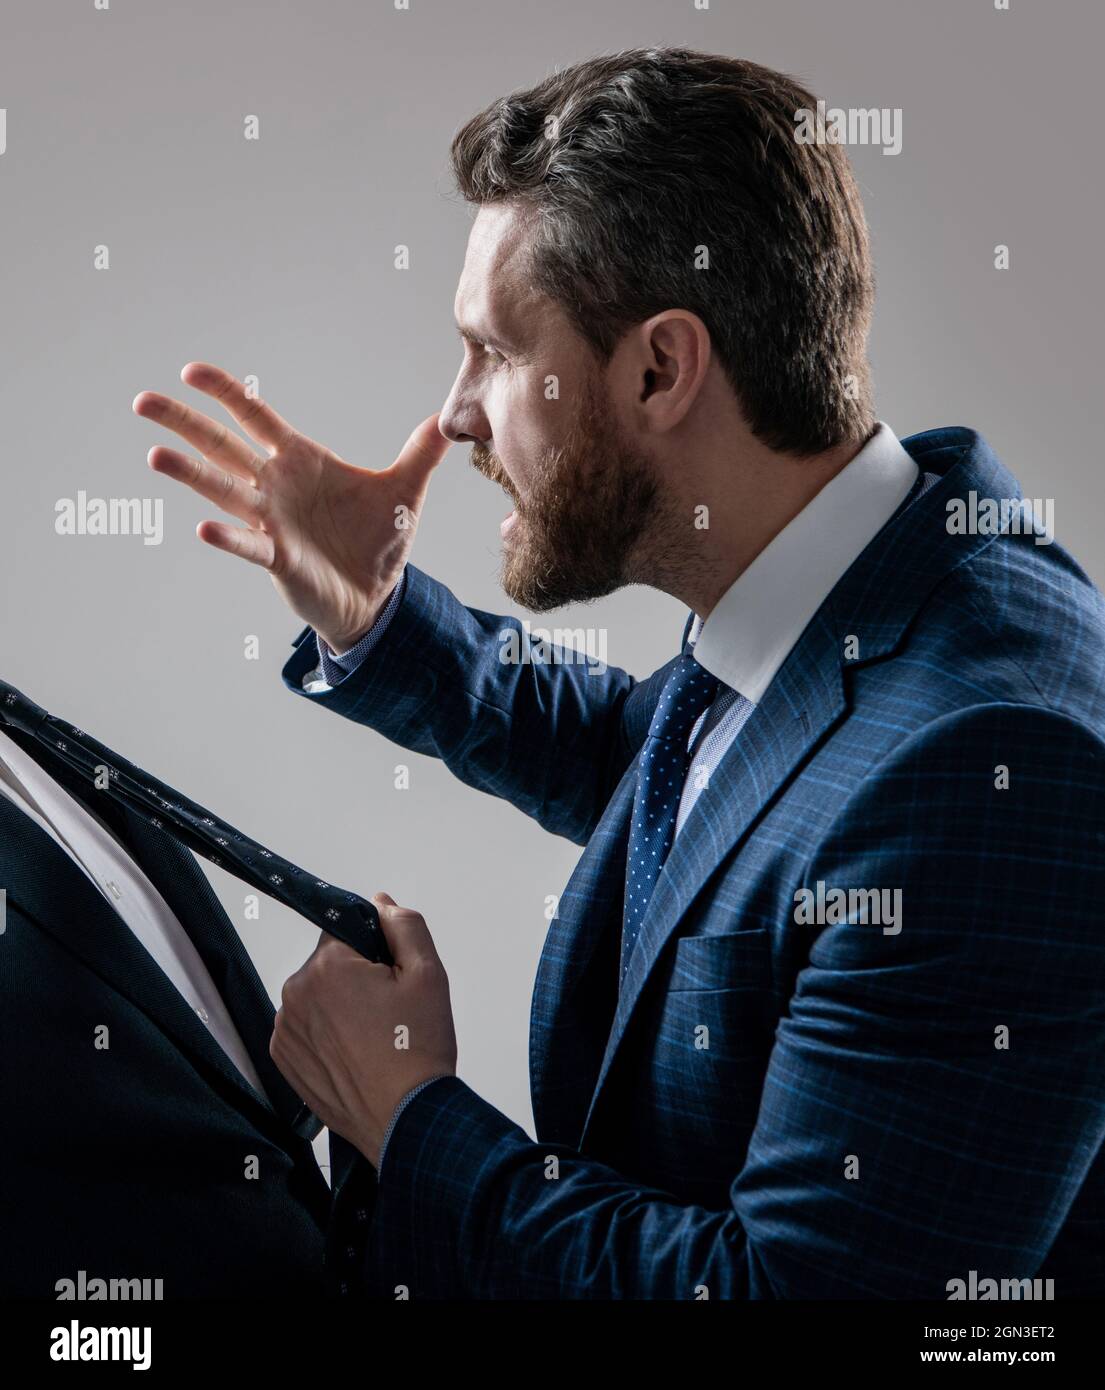 Aggressiver Anwalt in Anzug machen drohen Geste ziehen Mann Krawatte grauen  Hintergrund, bedrohlich Stockfotografie - Alamy